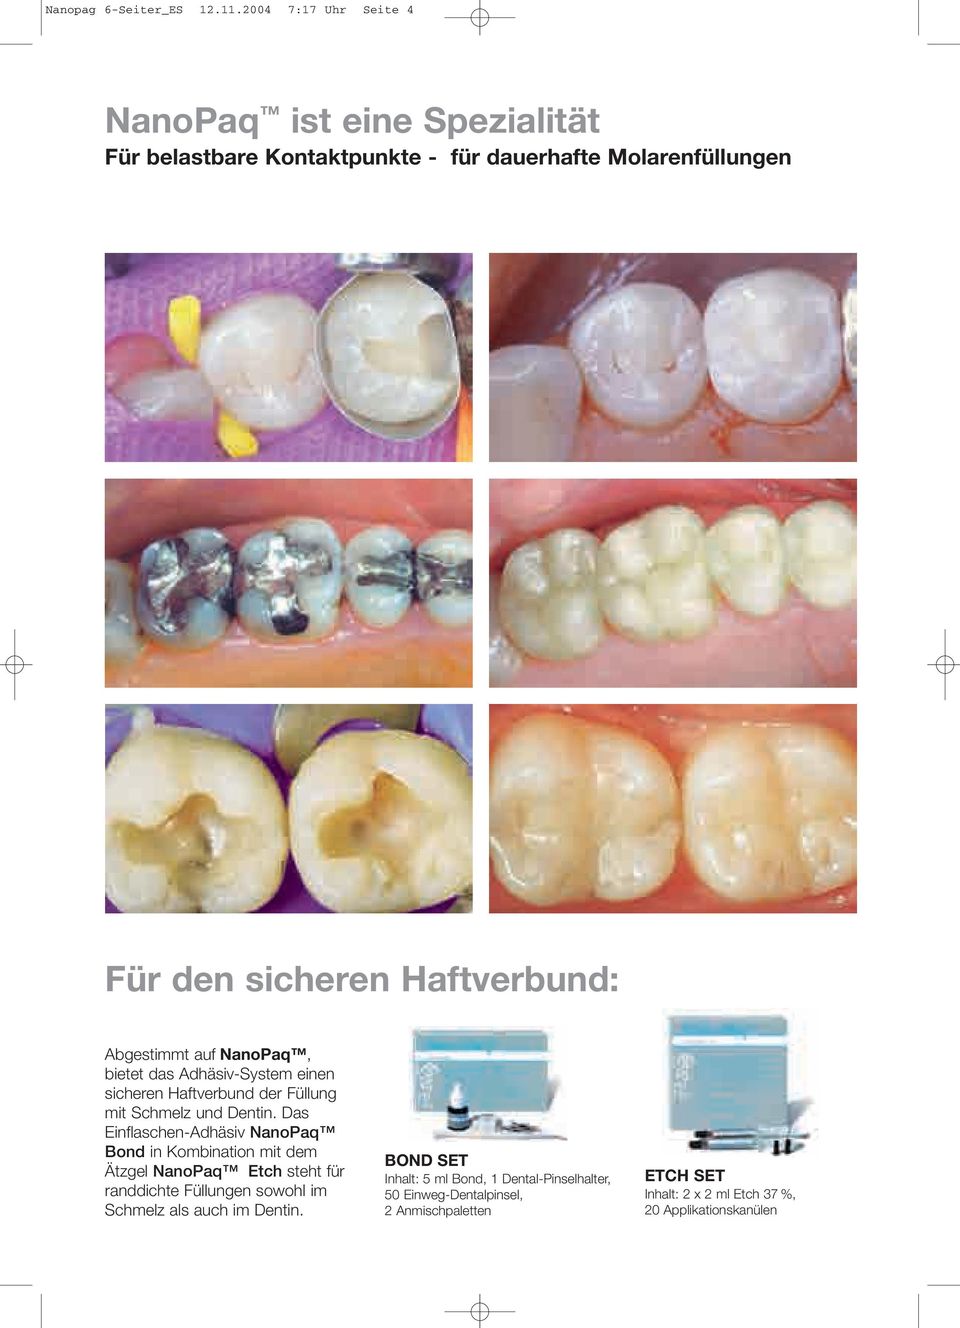 Abgestimmt auf, bietet das Adhäsiv-System einen sicheren Haftverbund der Füllung mit Schmelz und Dentin.